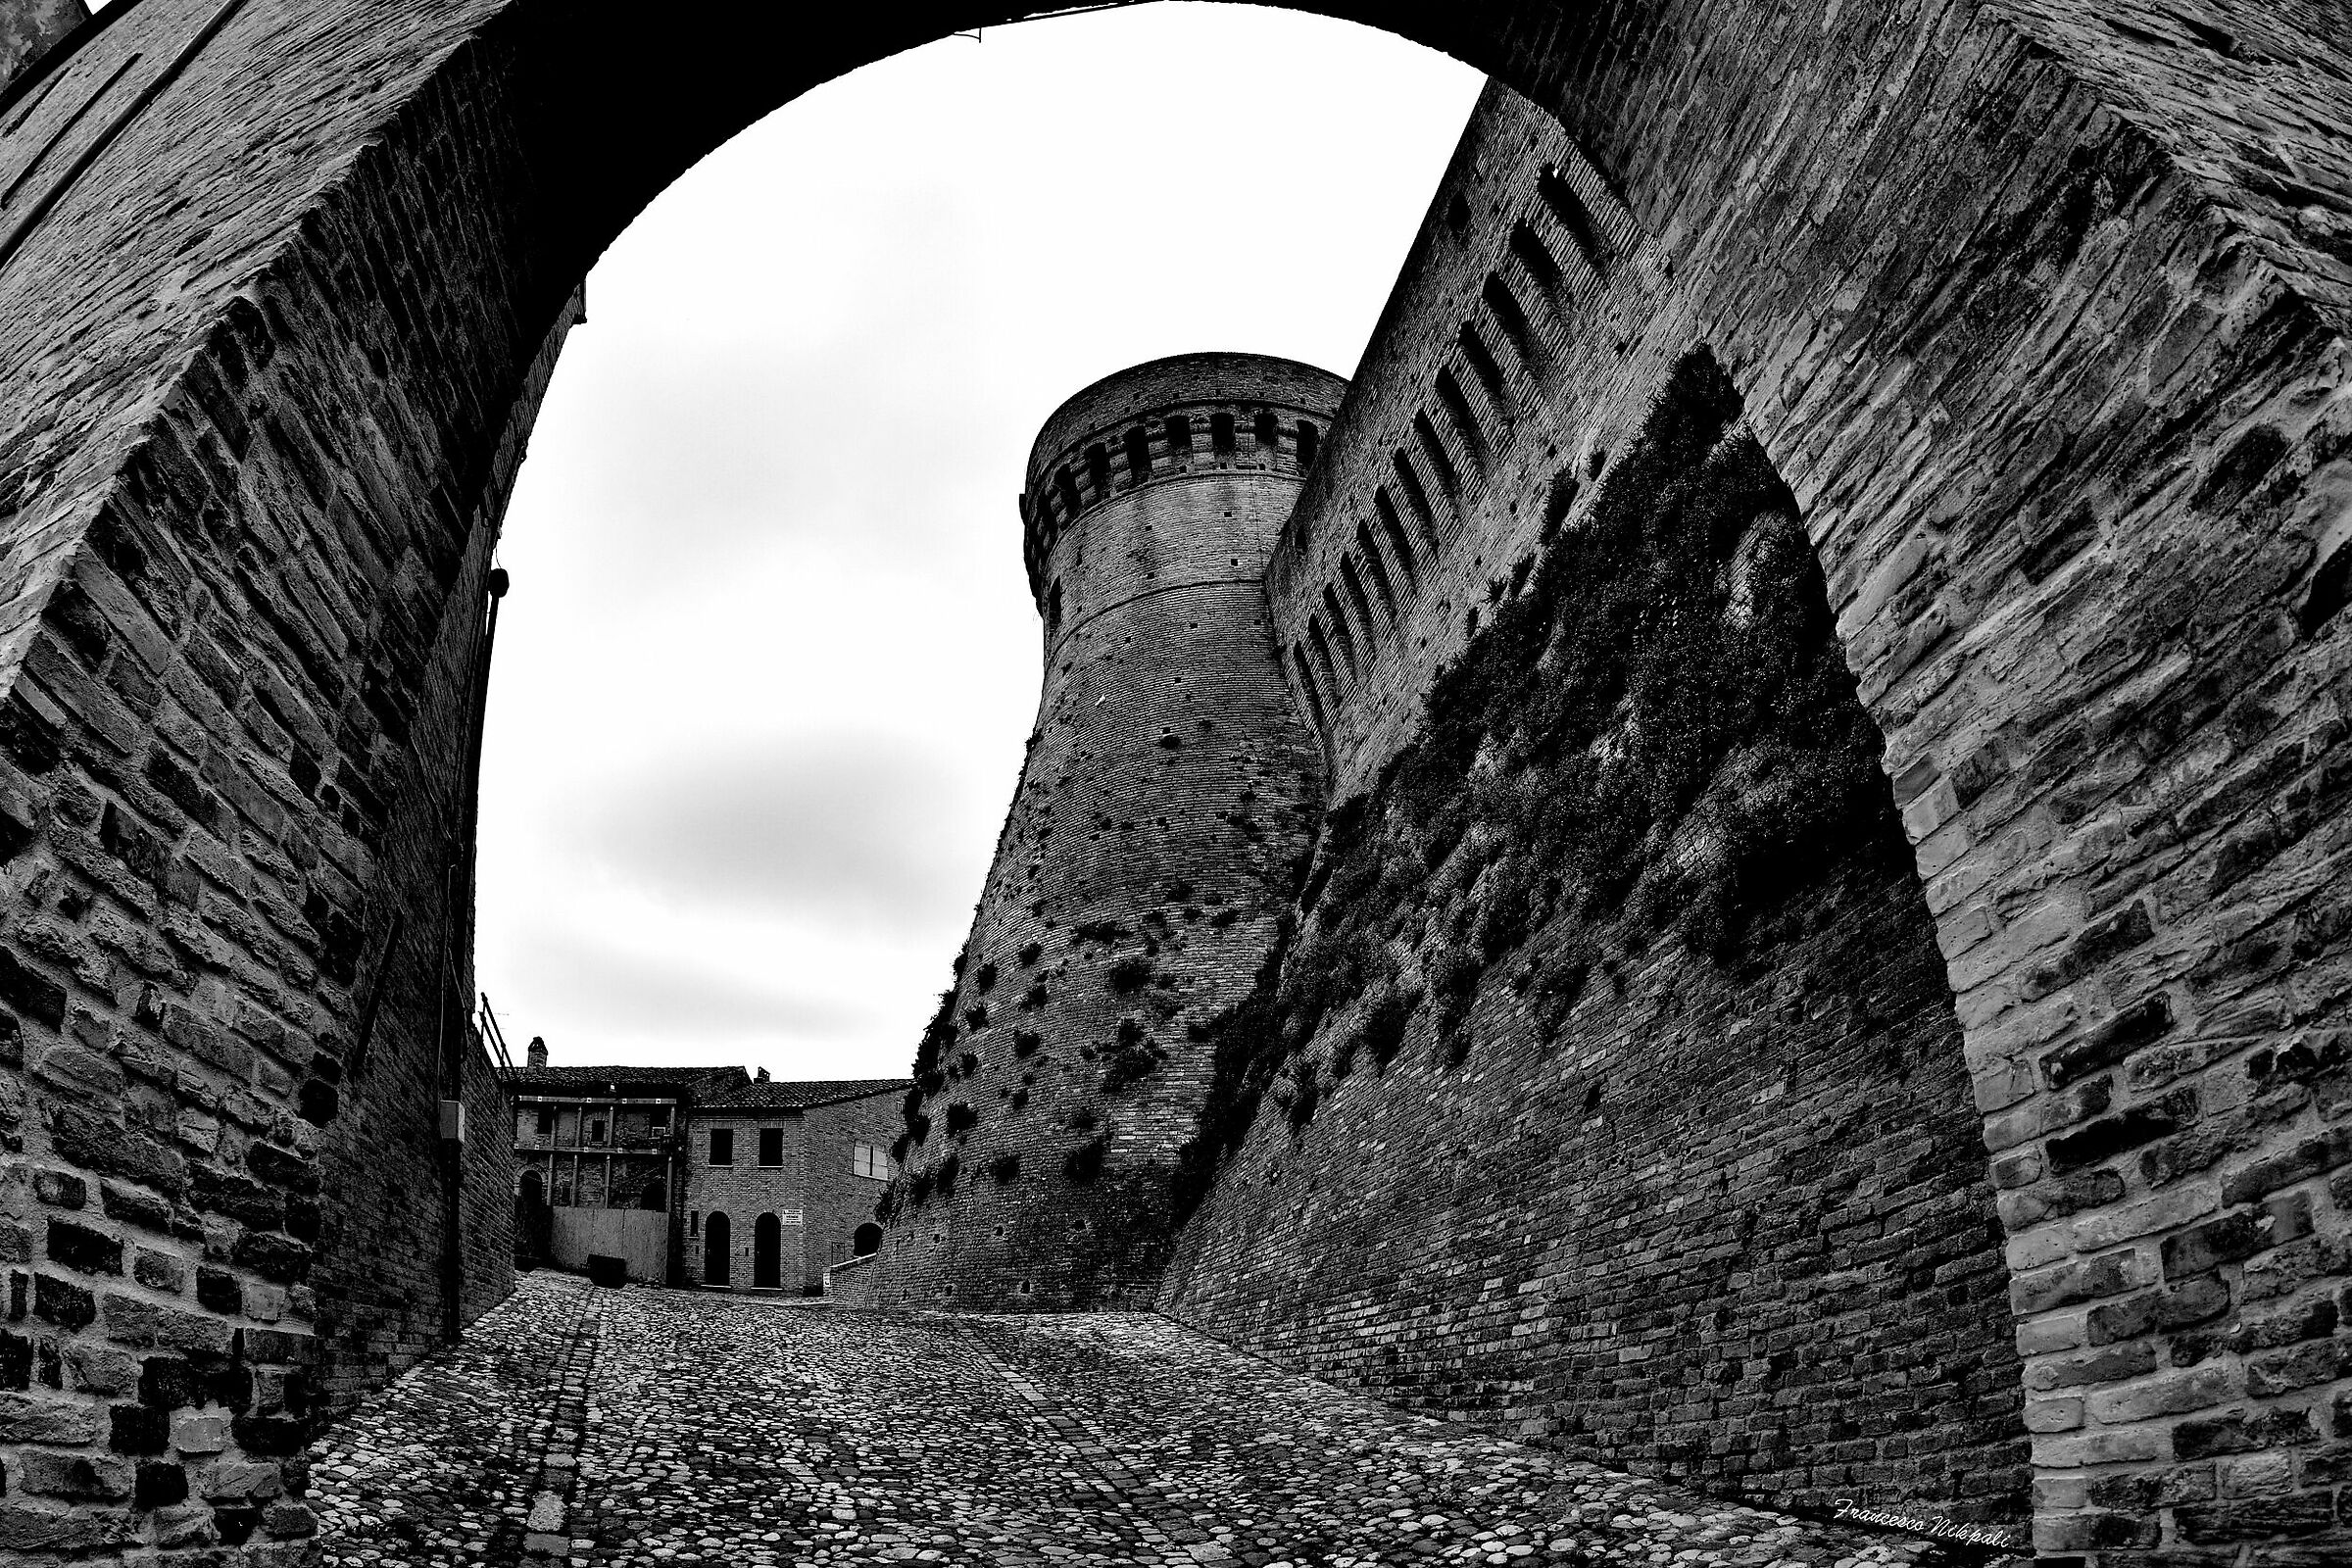 Acquaviva Picena ... The Fortress...